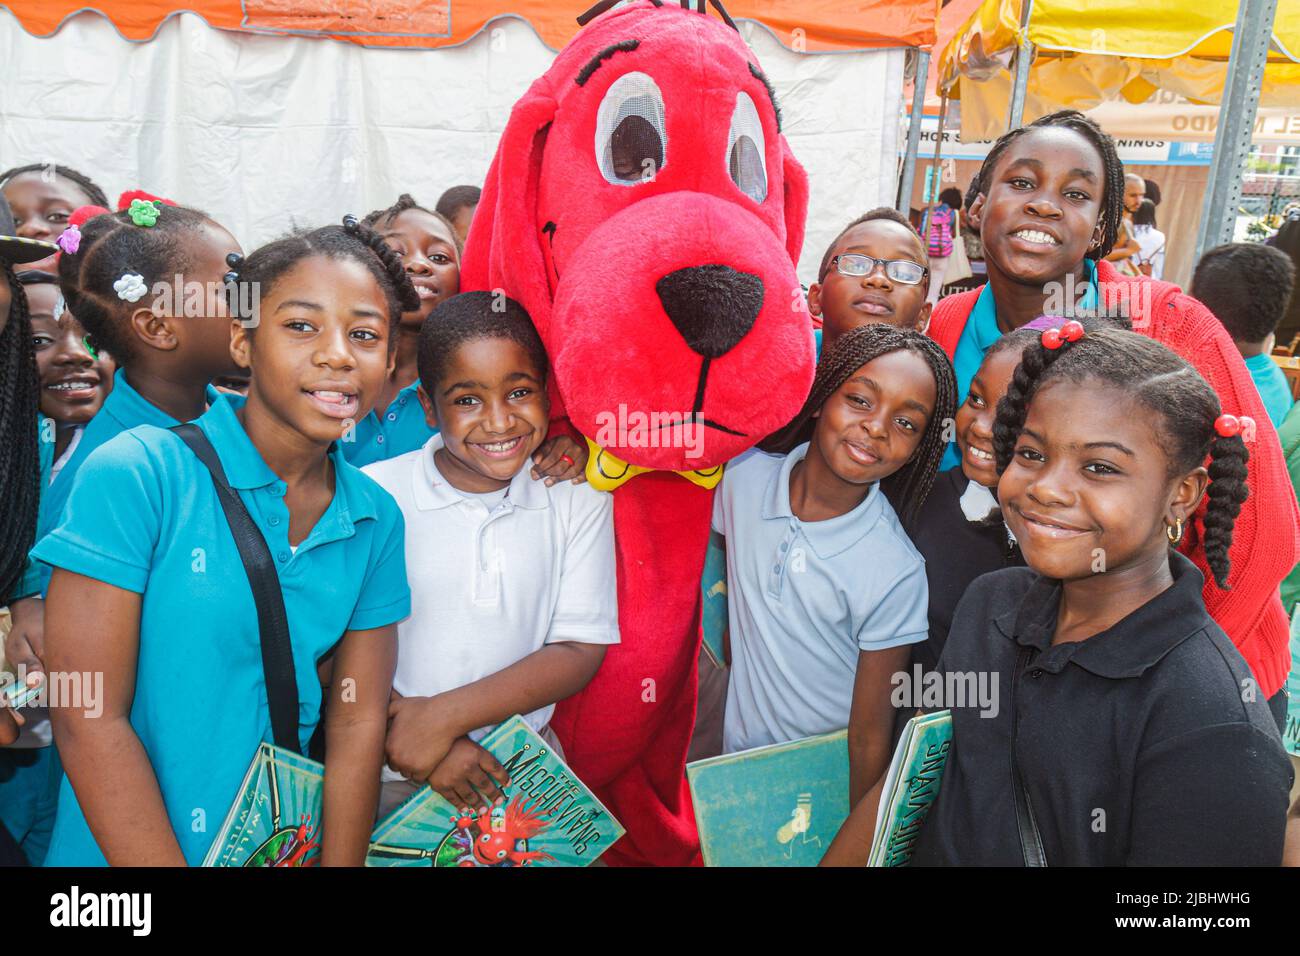 Miami Florida, Feria Internacional del Libro, Clifford el Big Red Dog carácter infantil, fans, niñas negras niños estudiantes amigos compañeros de clase viaje de campo Foto de stock